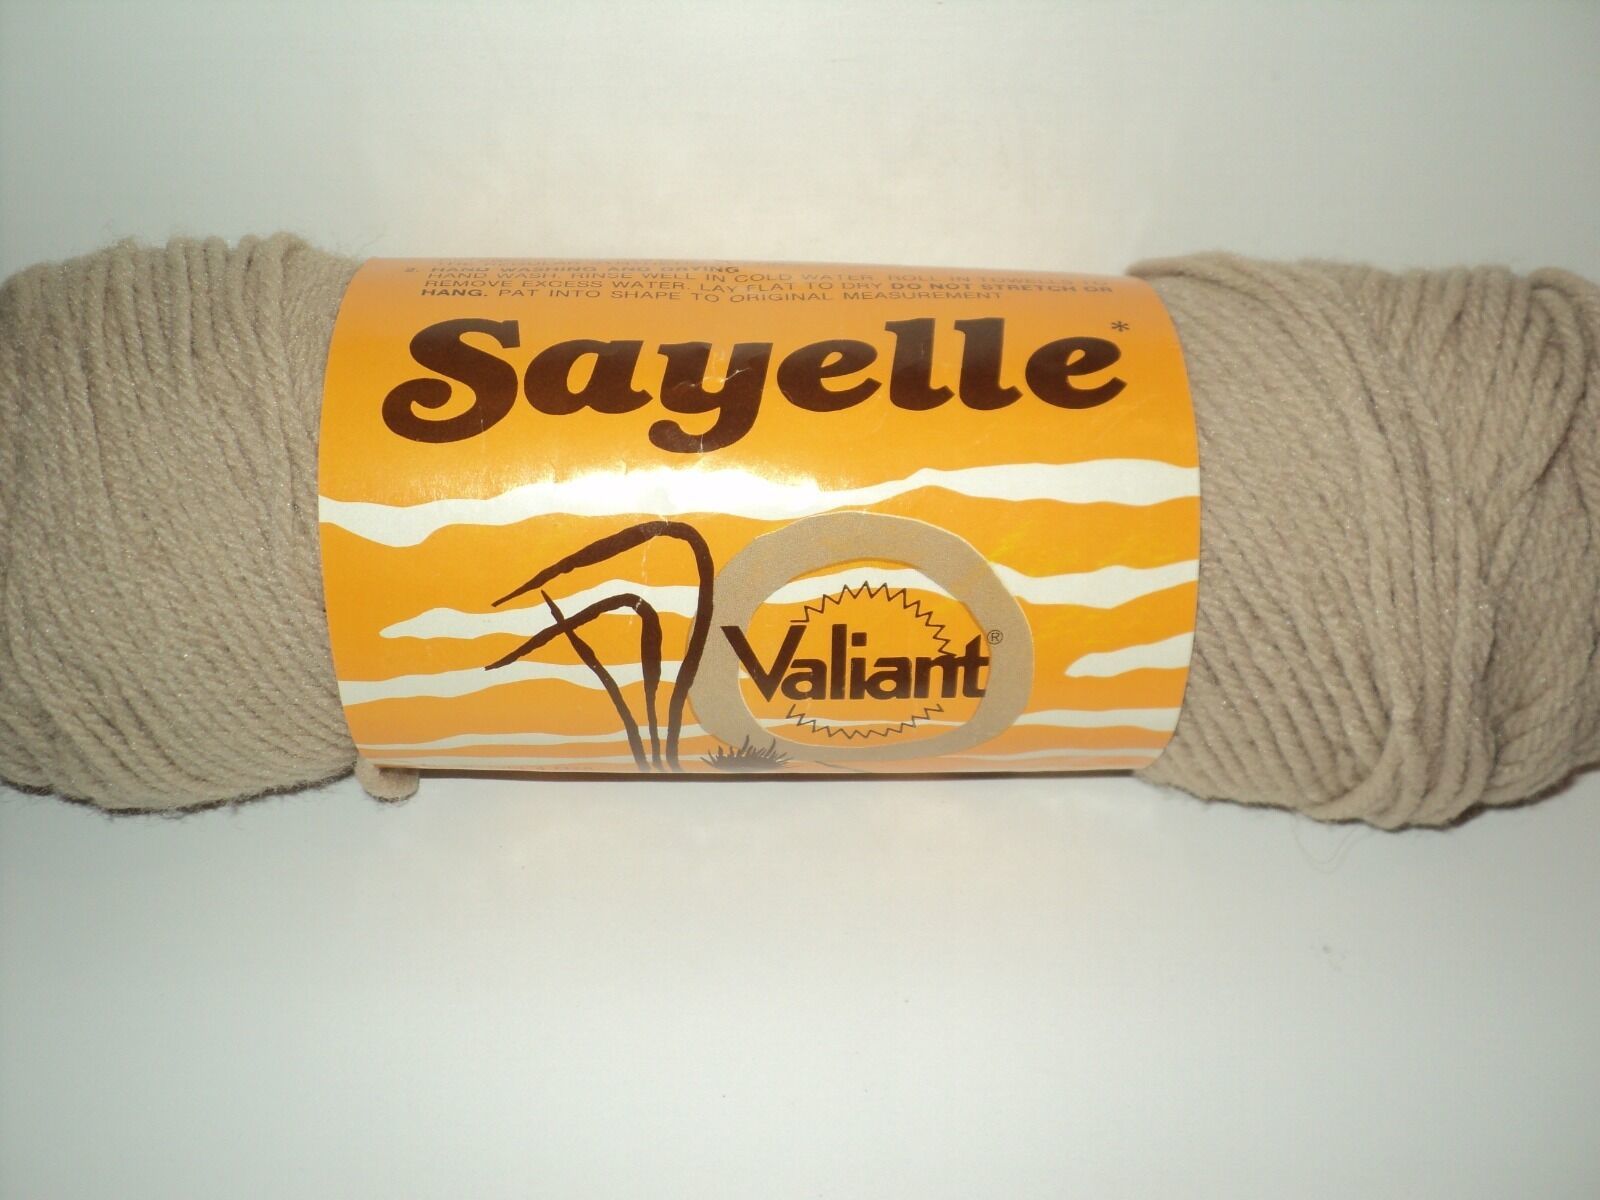 NEW Vintage Sayelle Valiant Yarn 4 oz. 6611 Camel 100% Dupont Orlon Acrylic - $6.20